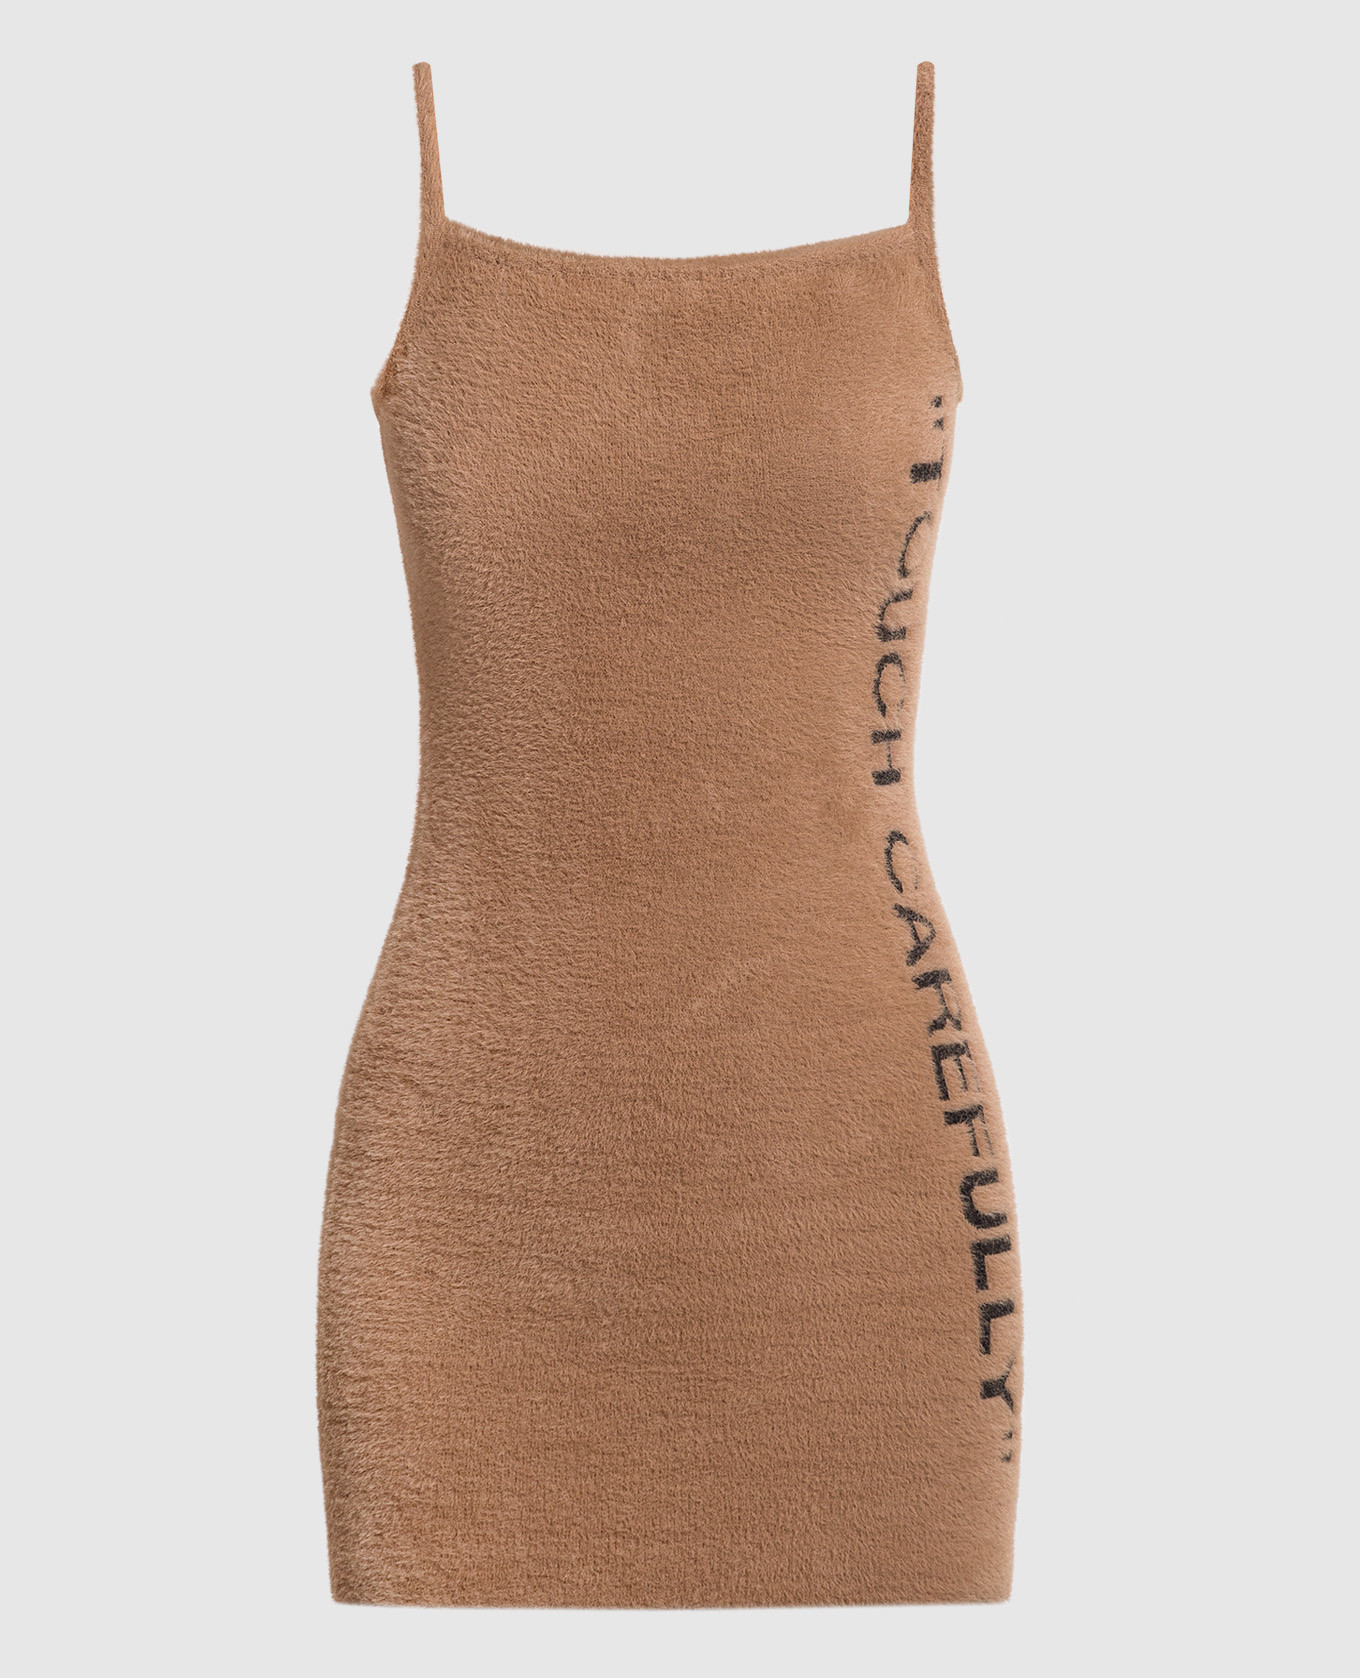 Коричневое платье мини с контрастной надписью Touch carefully